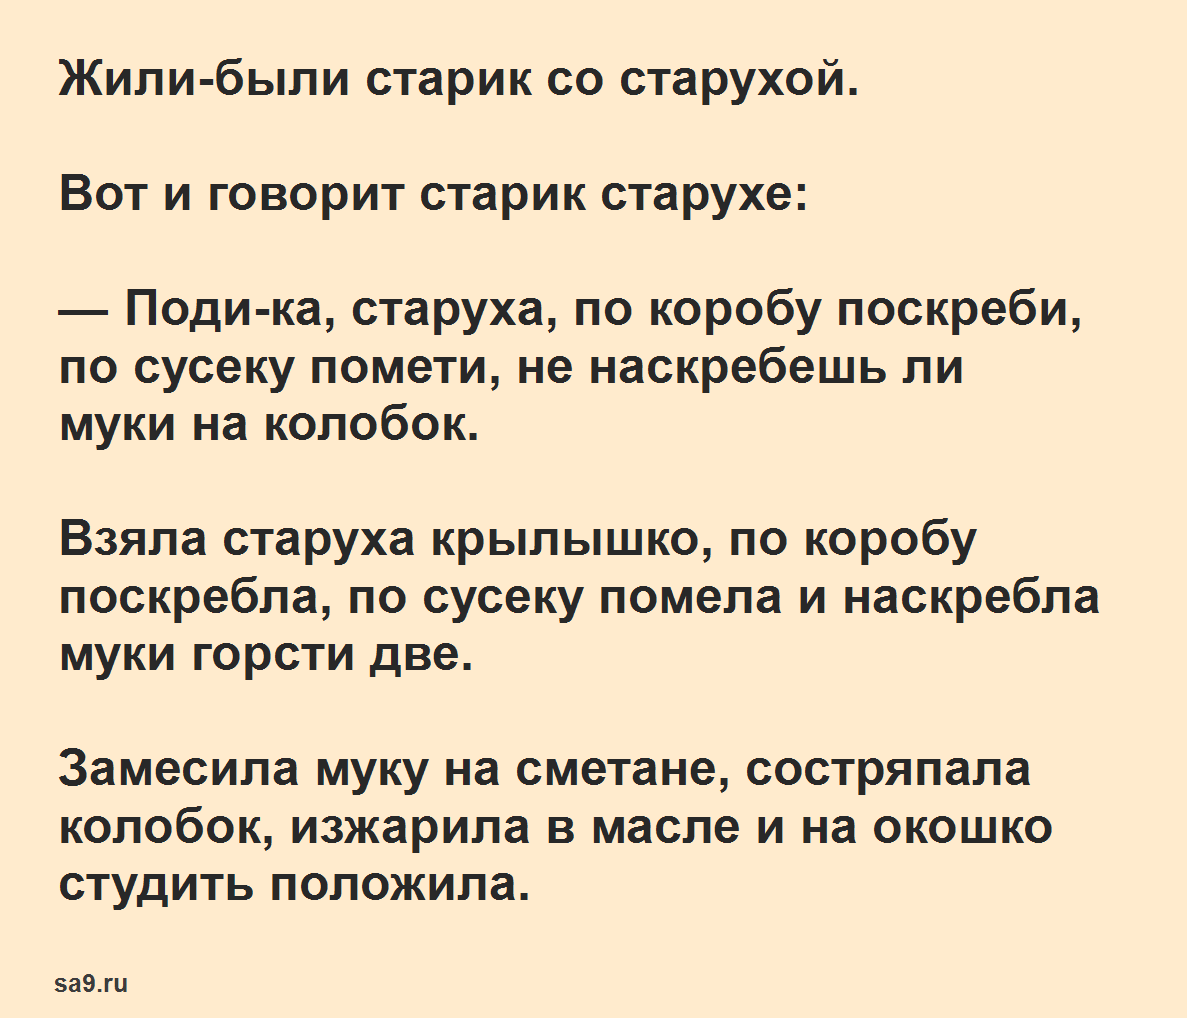 Колобок - русская народная сказка